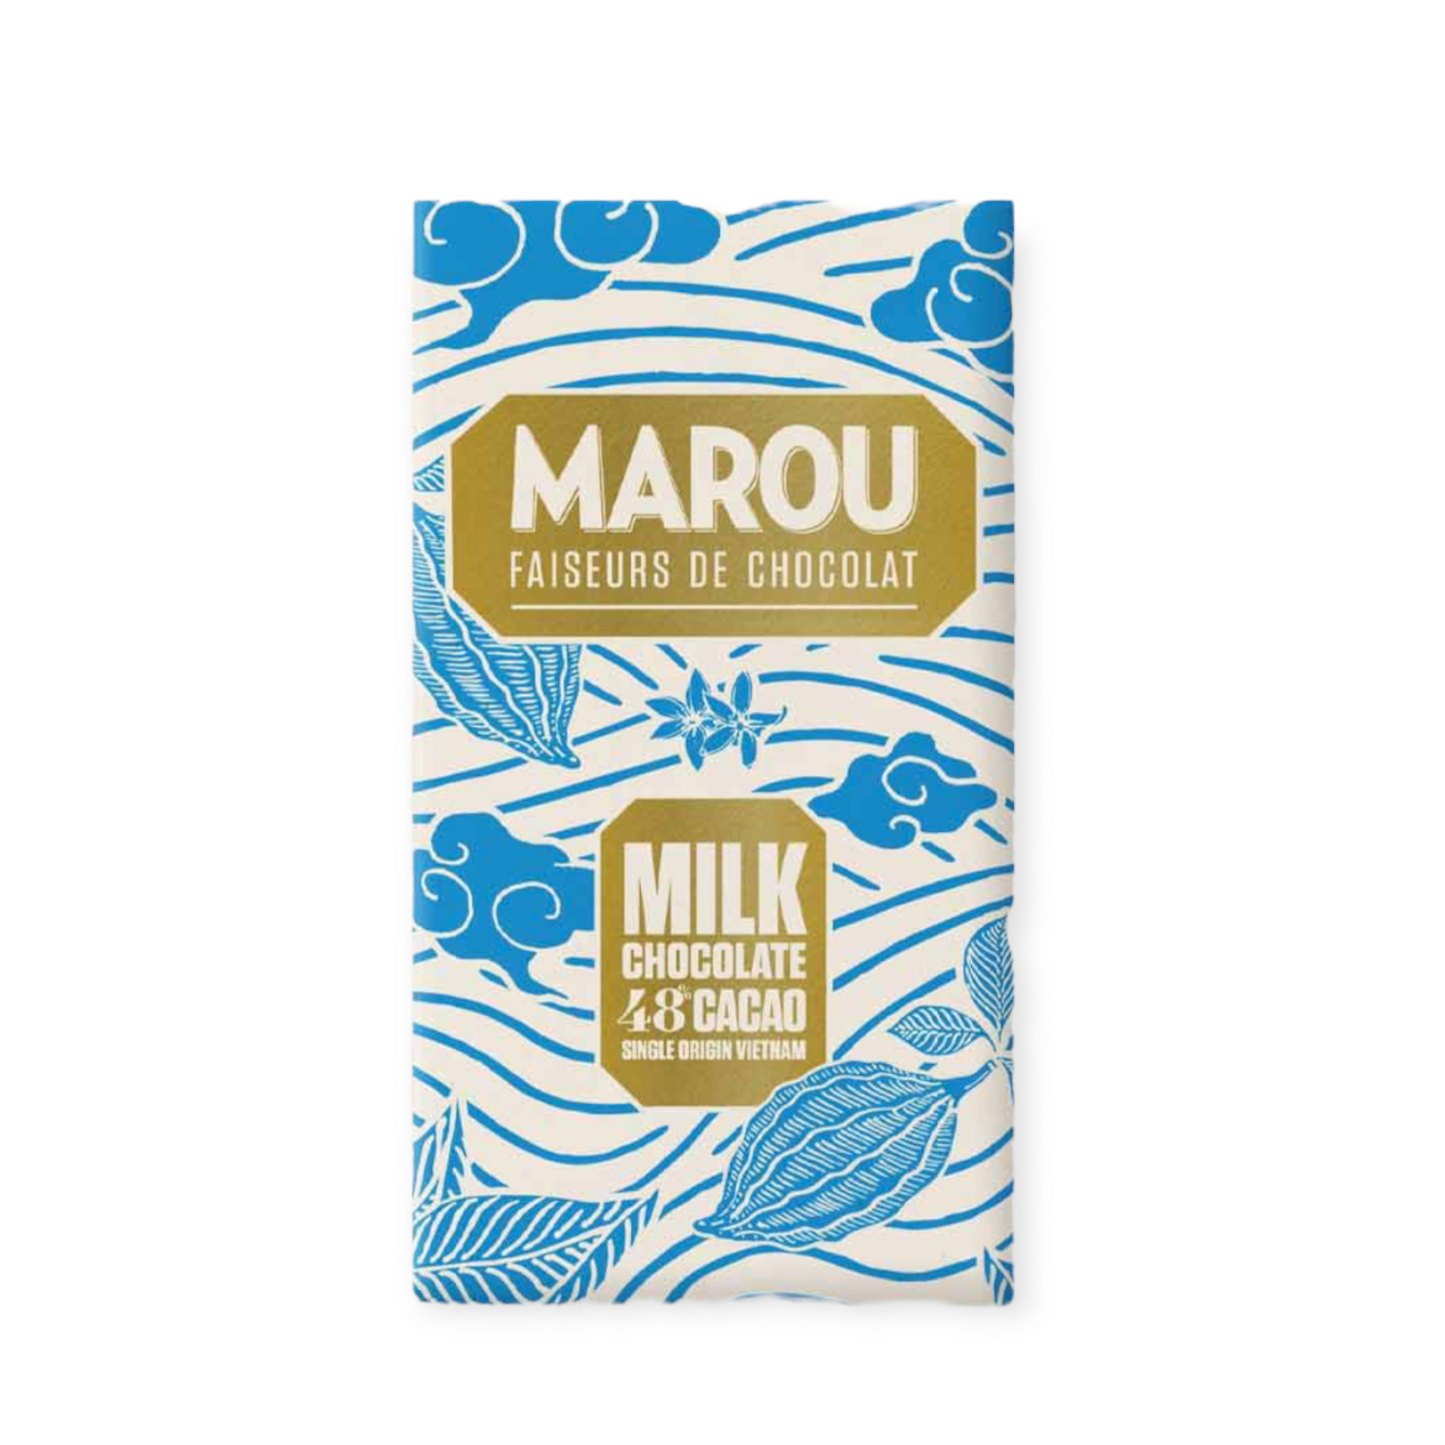 Marou 48% milk chocolate VIETNAM